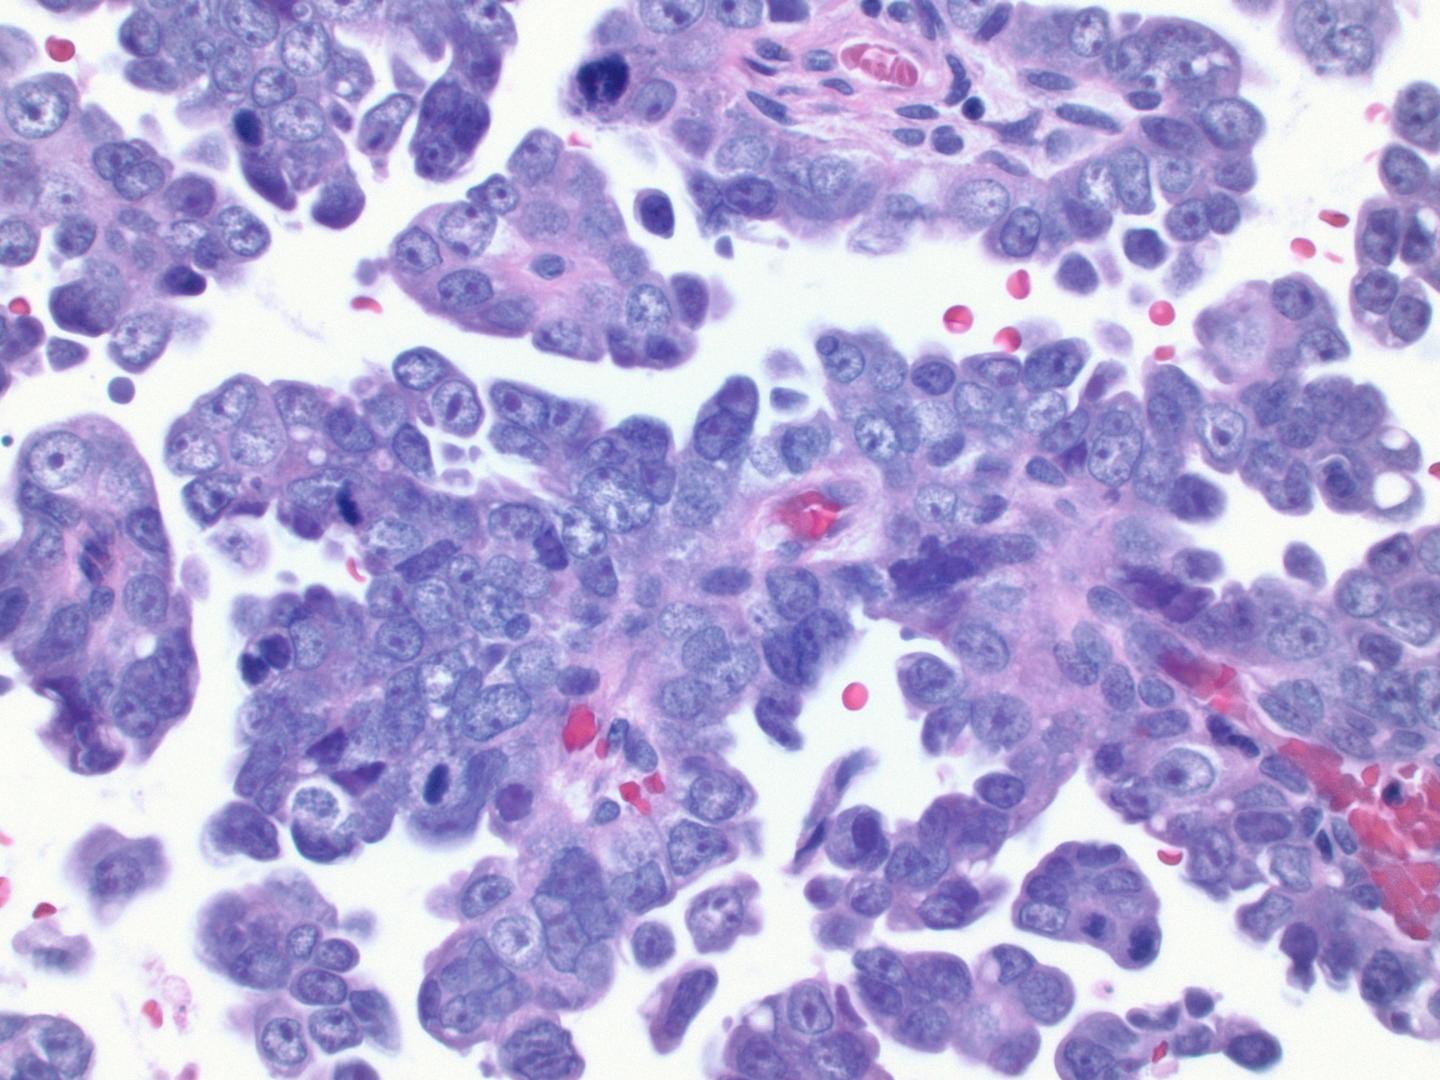 Histology Slide of Serous Endometrial Cancer